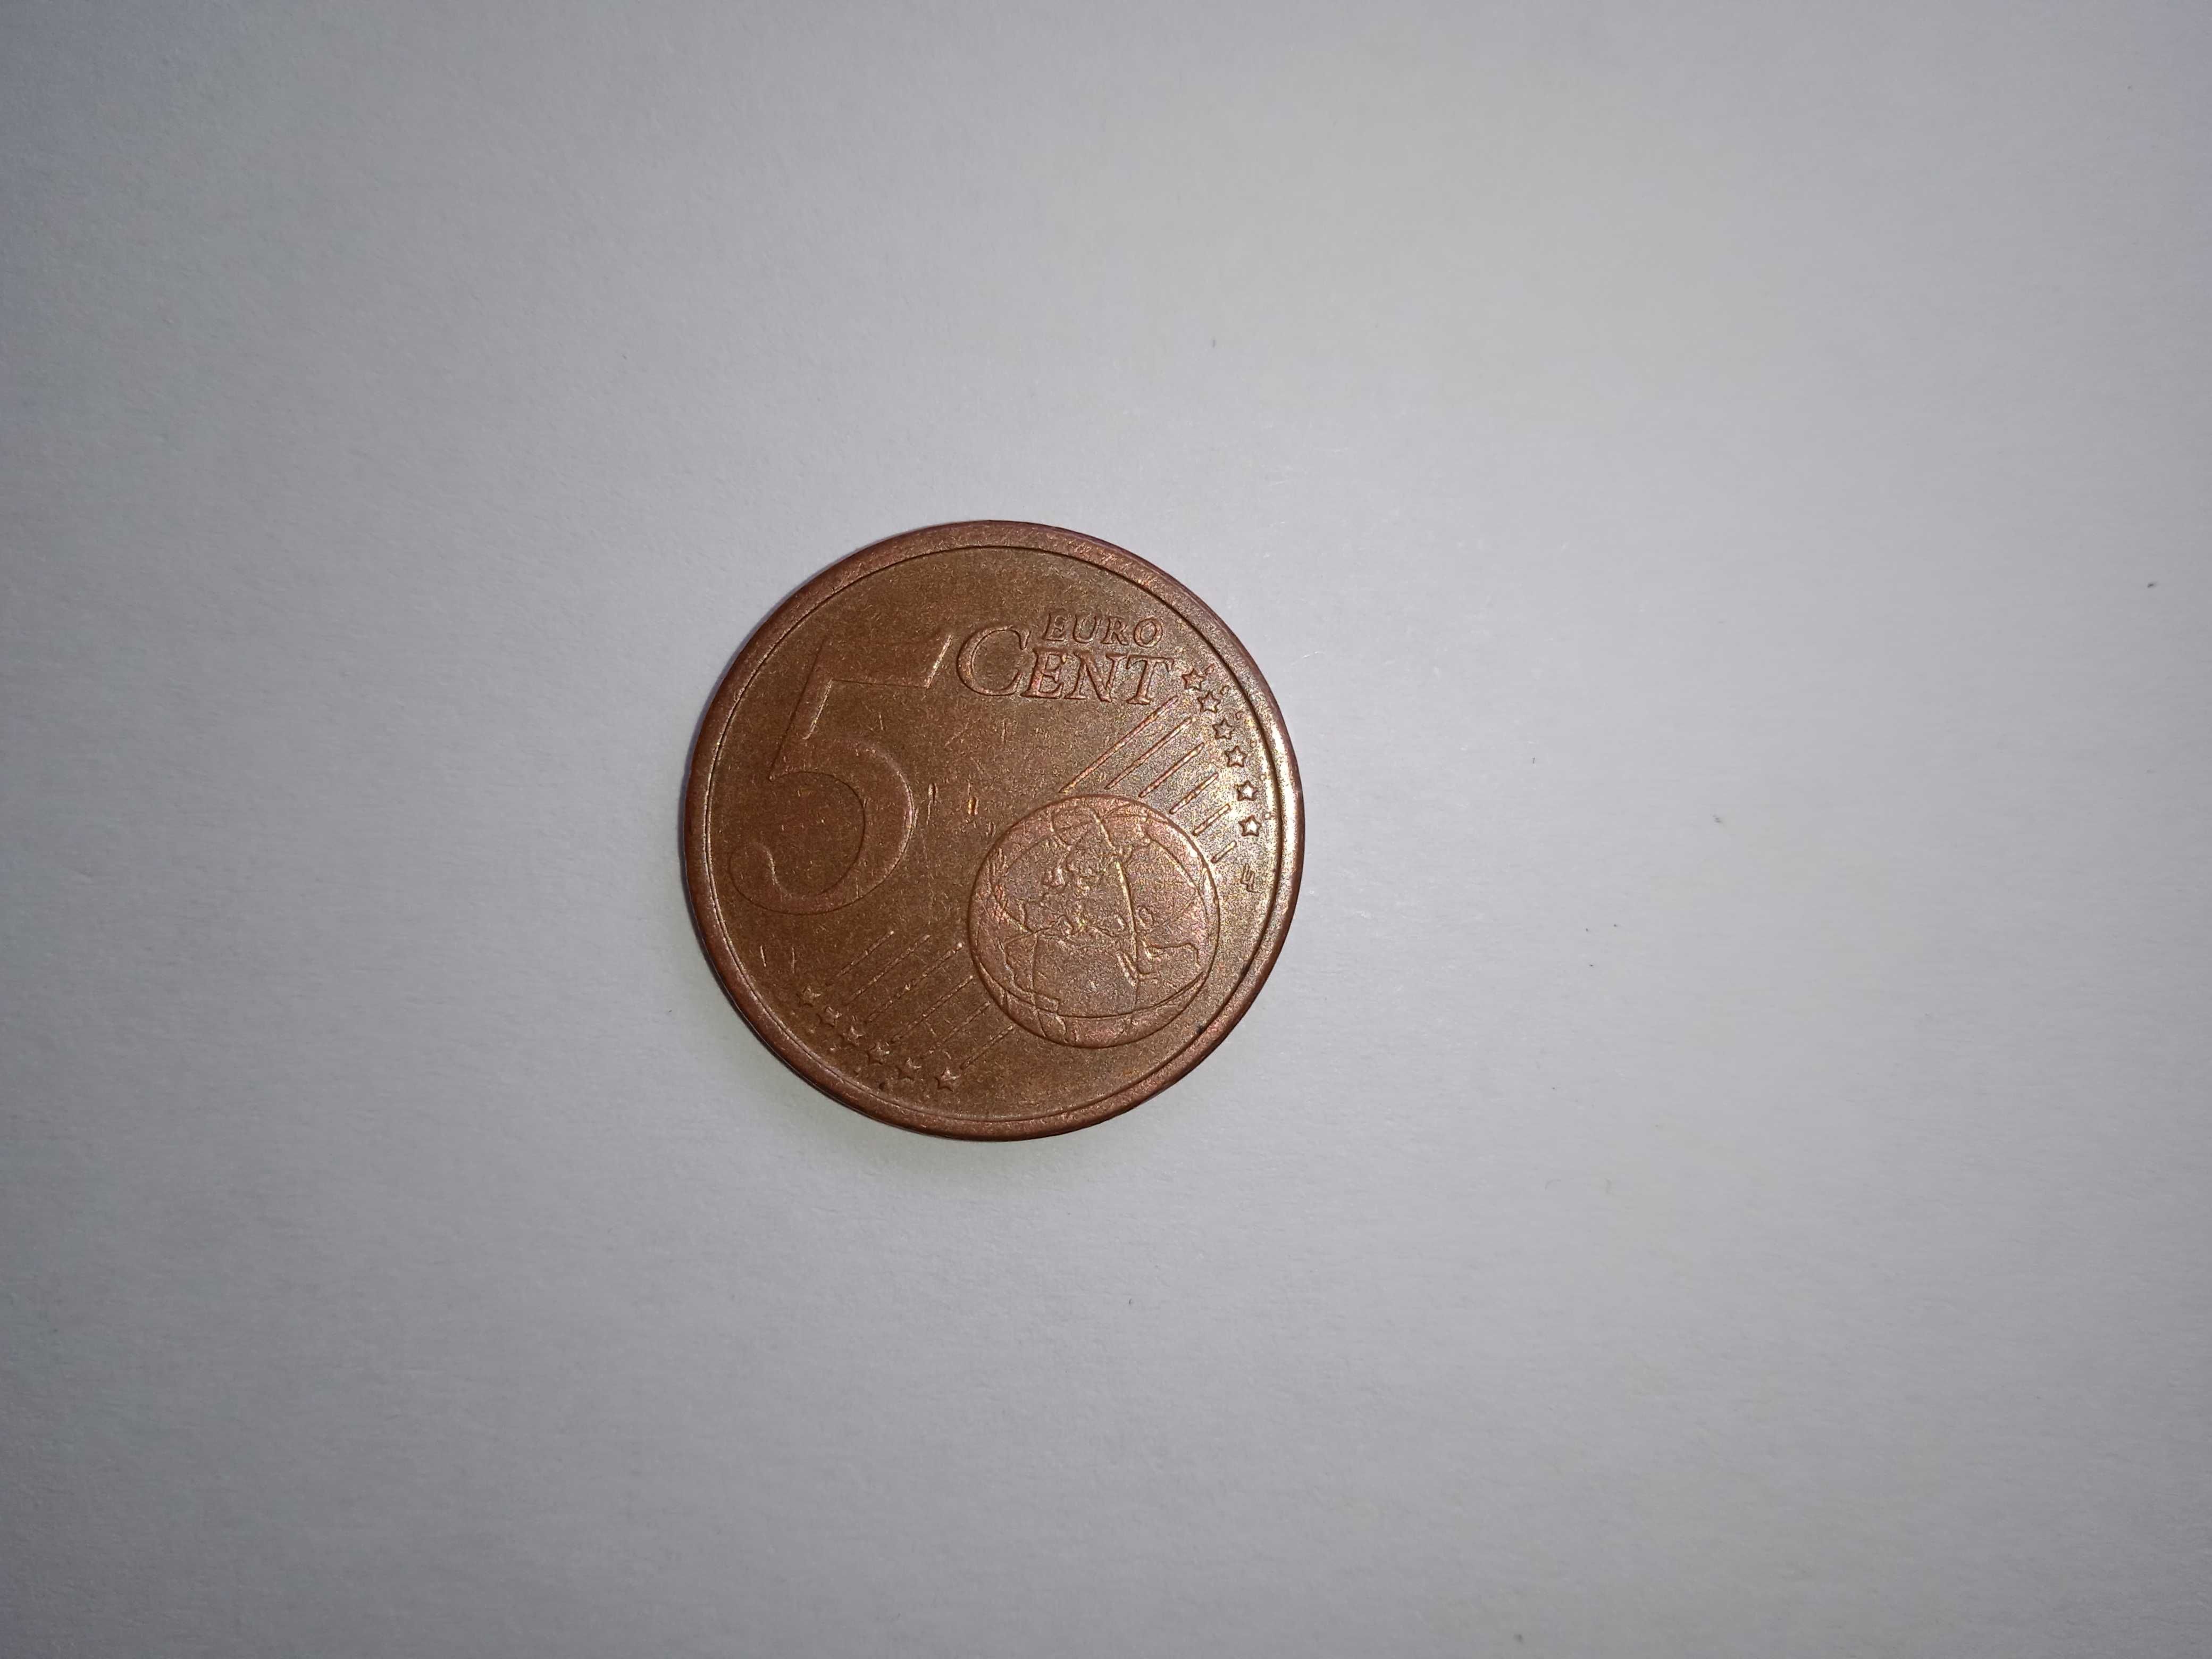 Vendo moedas antigas da Alemanha 5 centimos